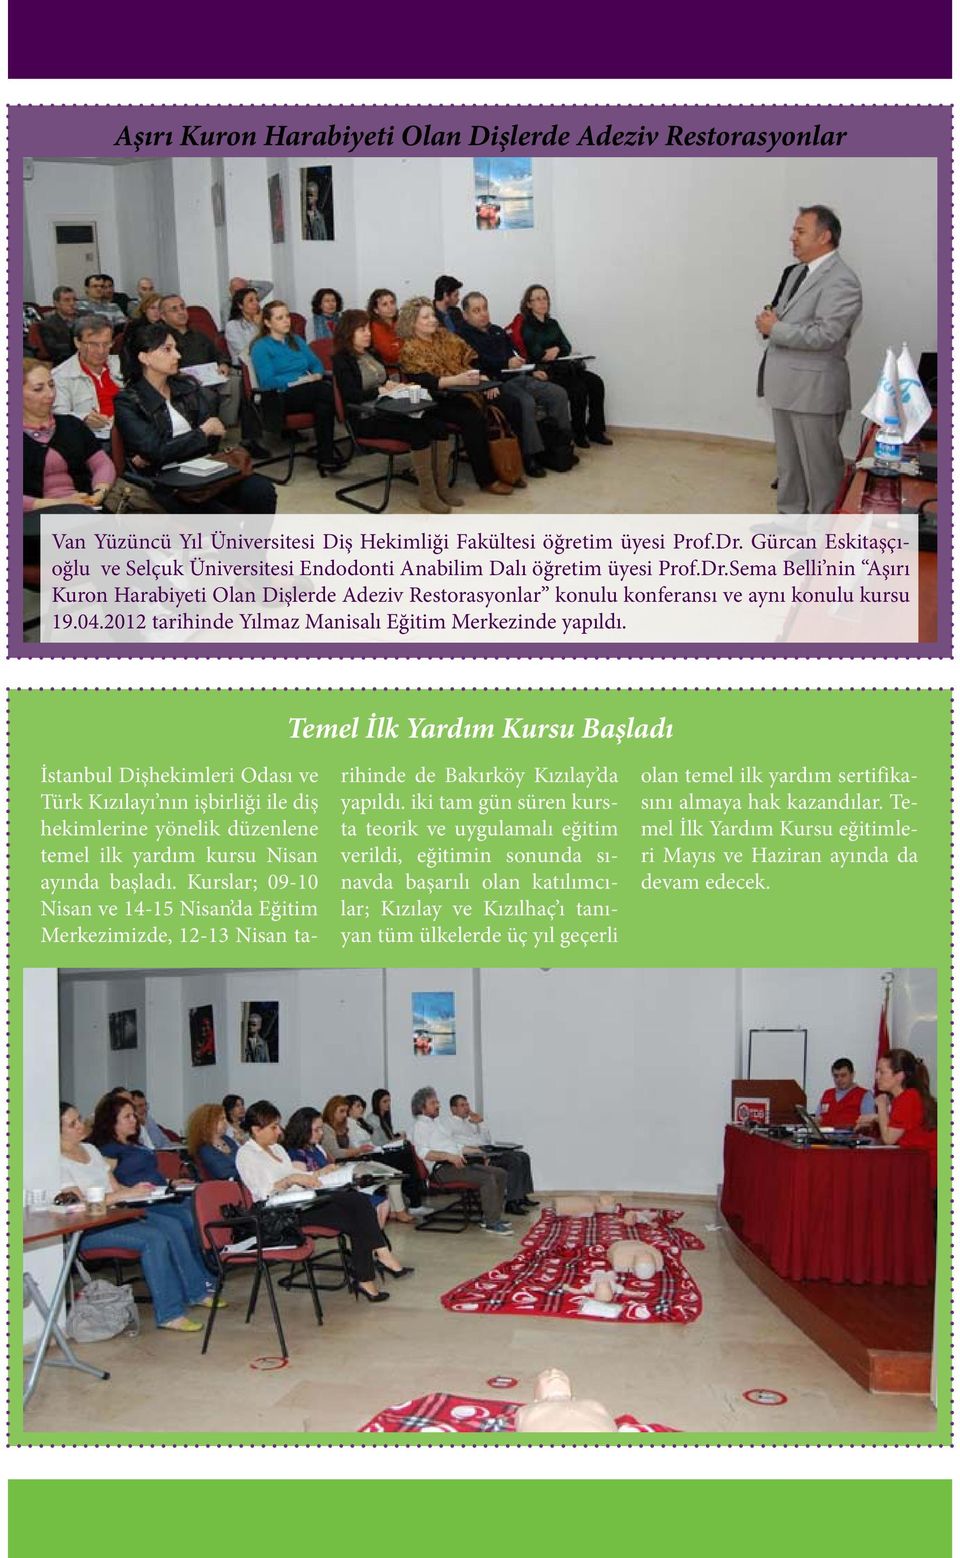 Sema Belli nin Aşırı Kuron Harabiyeti Olan Dişlerde Adeziv Restorasyonlar konulu konferansı ve aynı konulu kursu 19.04.2012 tarihinde Yılmaz Manisalı Eğitim Merkezinde yapıldı.